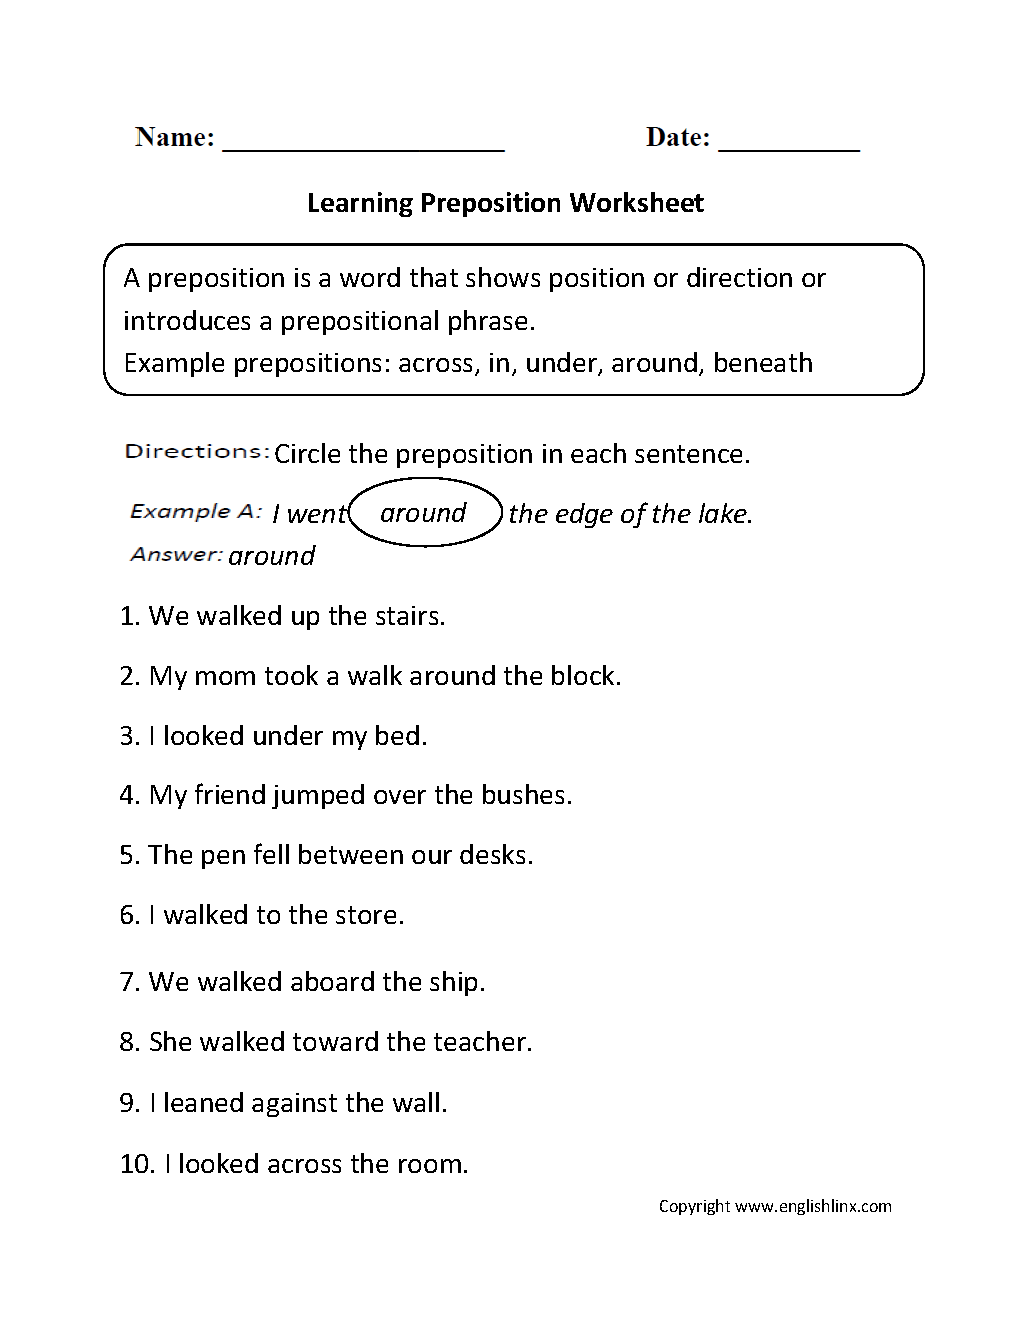 Learning Preposition Worksheet